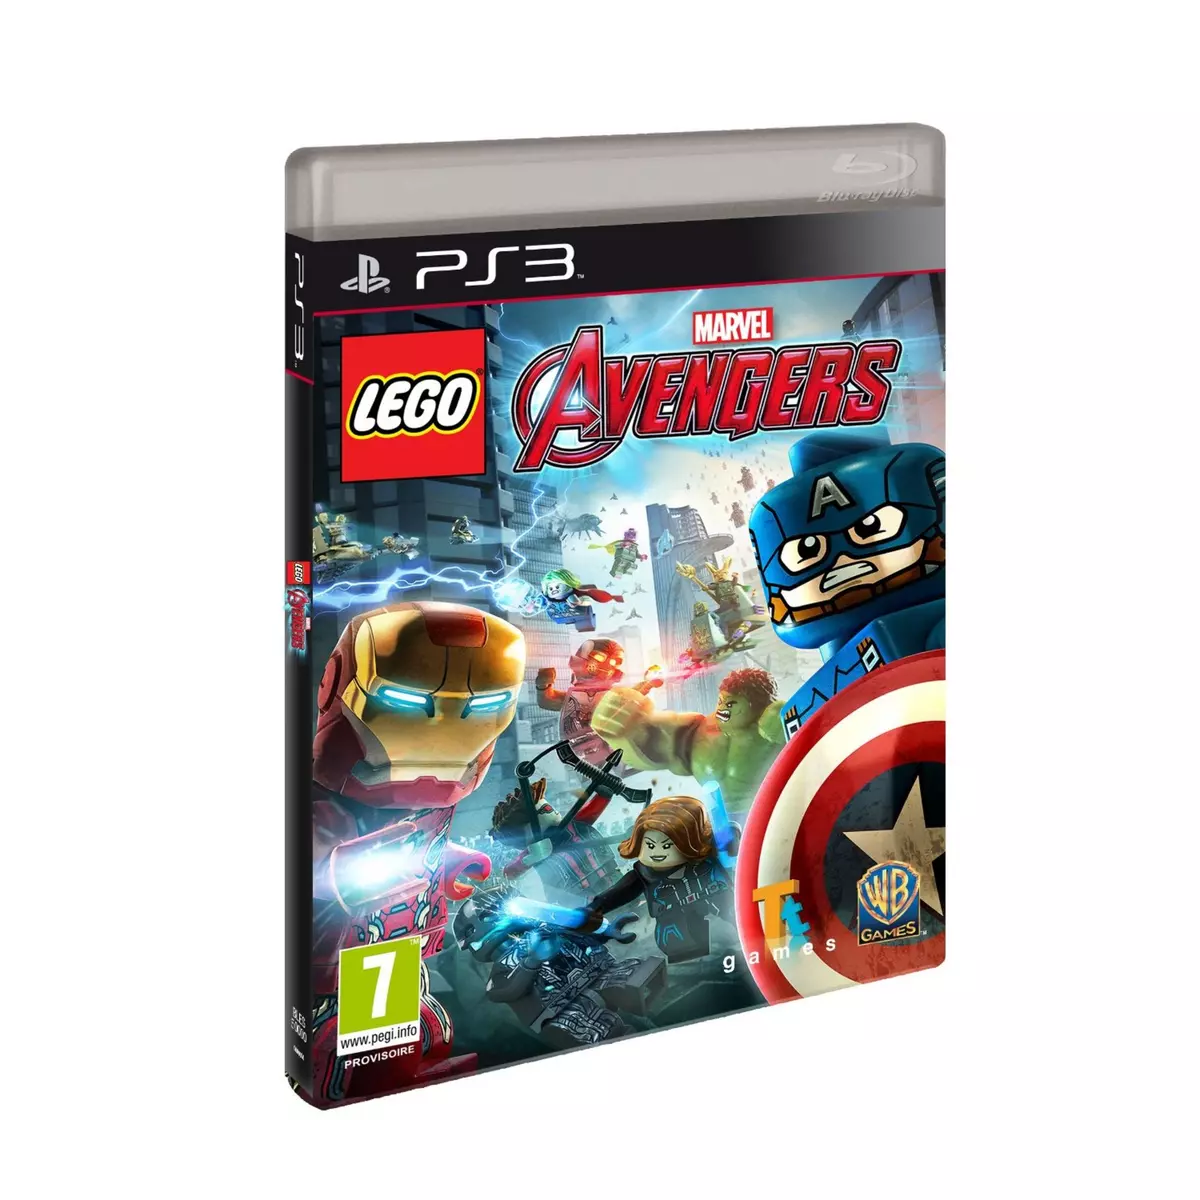 Lego Marvel's Avengers PS3